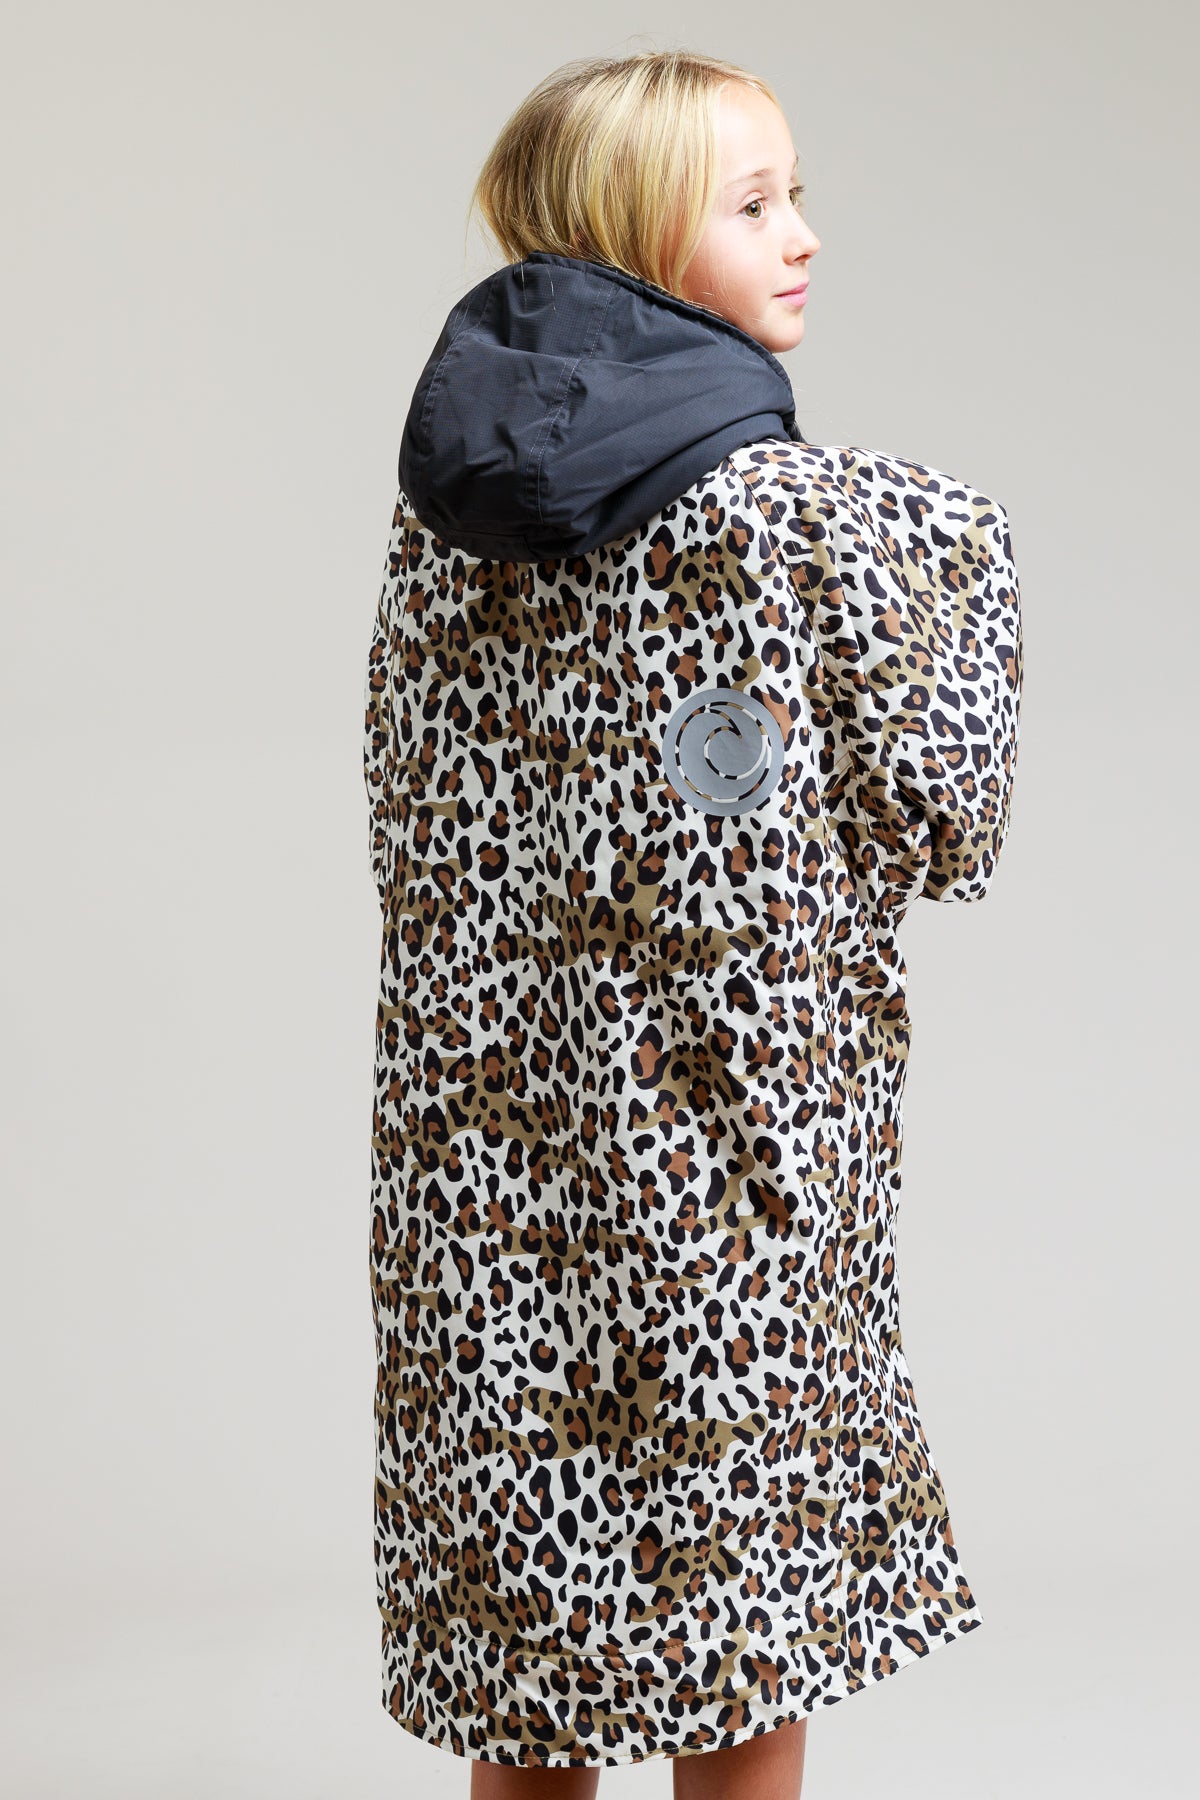 Hard Shell-badjas voor kinderen - Luipaardprint